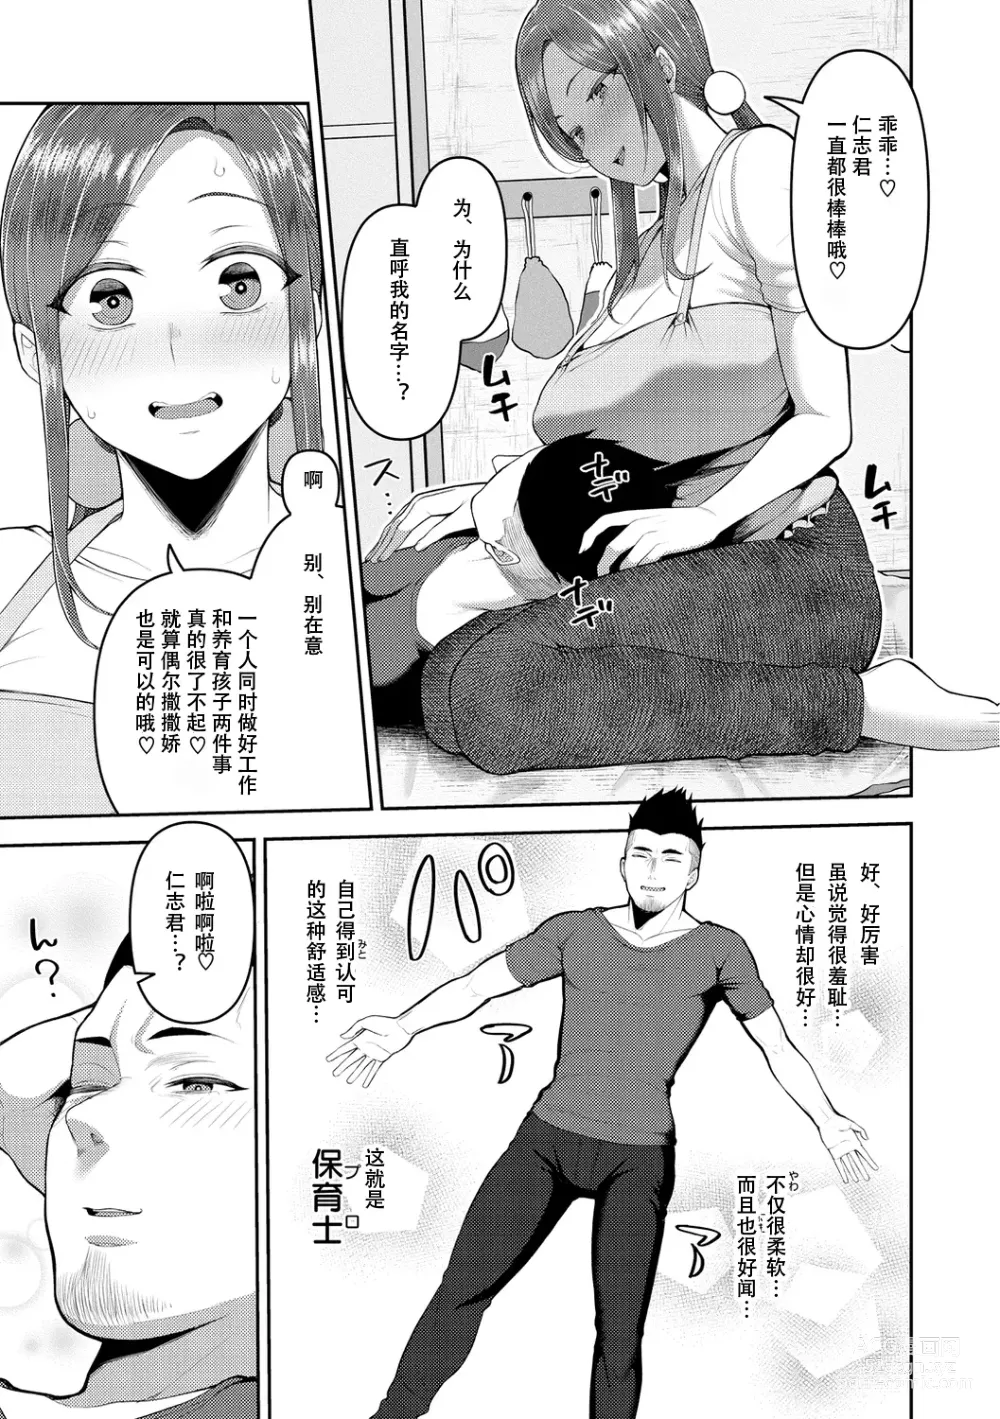 Page 9 of manga Amaete Hoshii no - I want you to spoil me